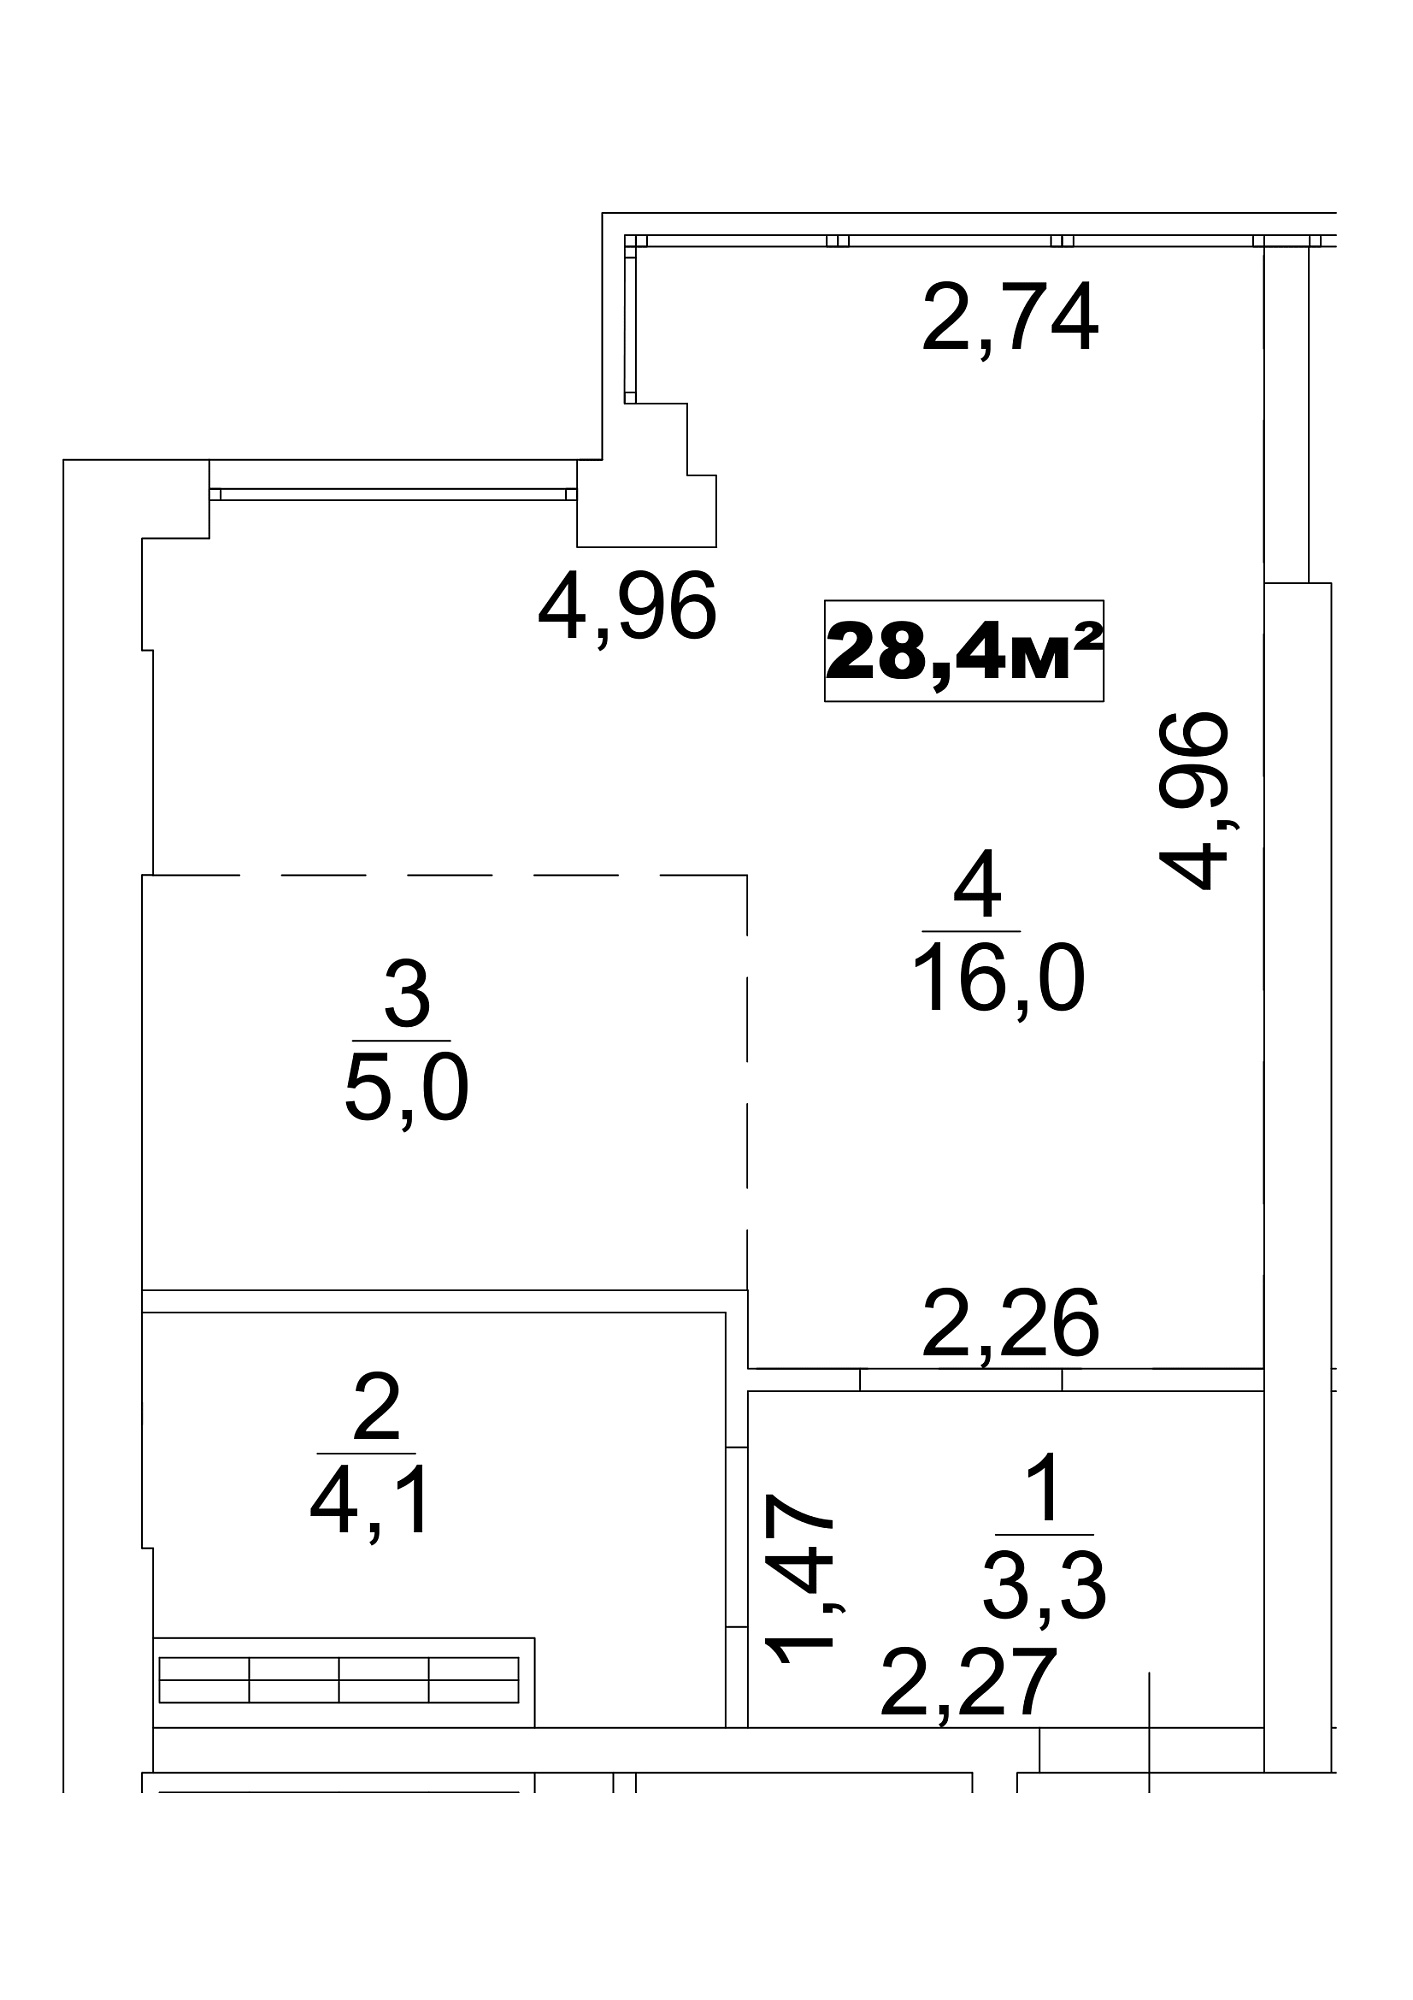 Планування Smart-квартира площею 28.4м2, AB-13-04/0027б.